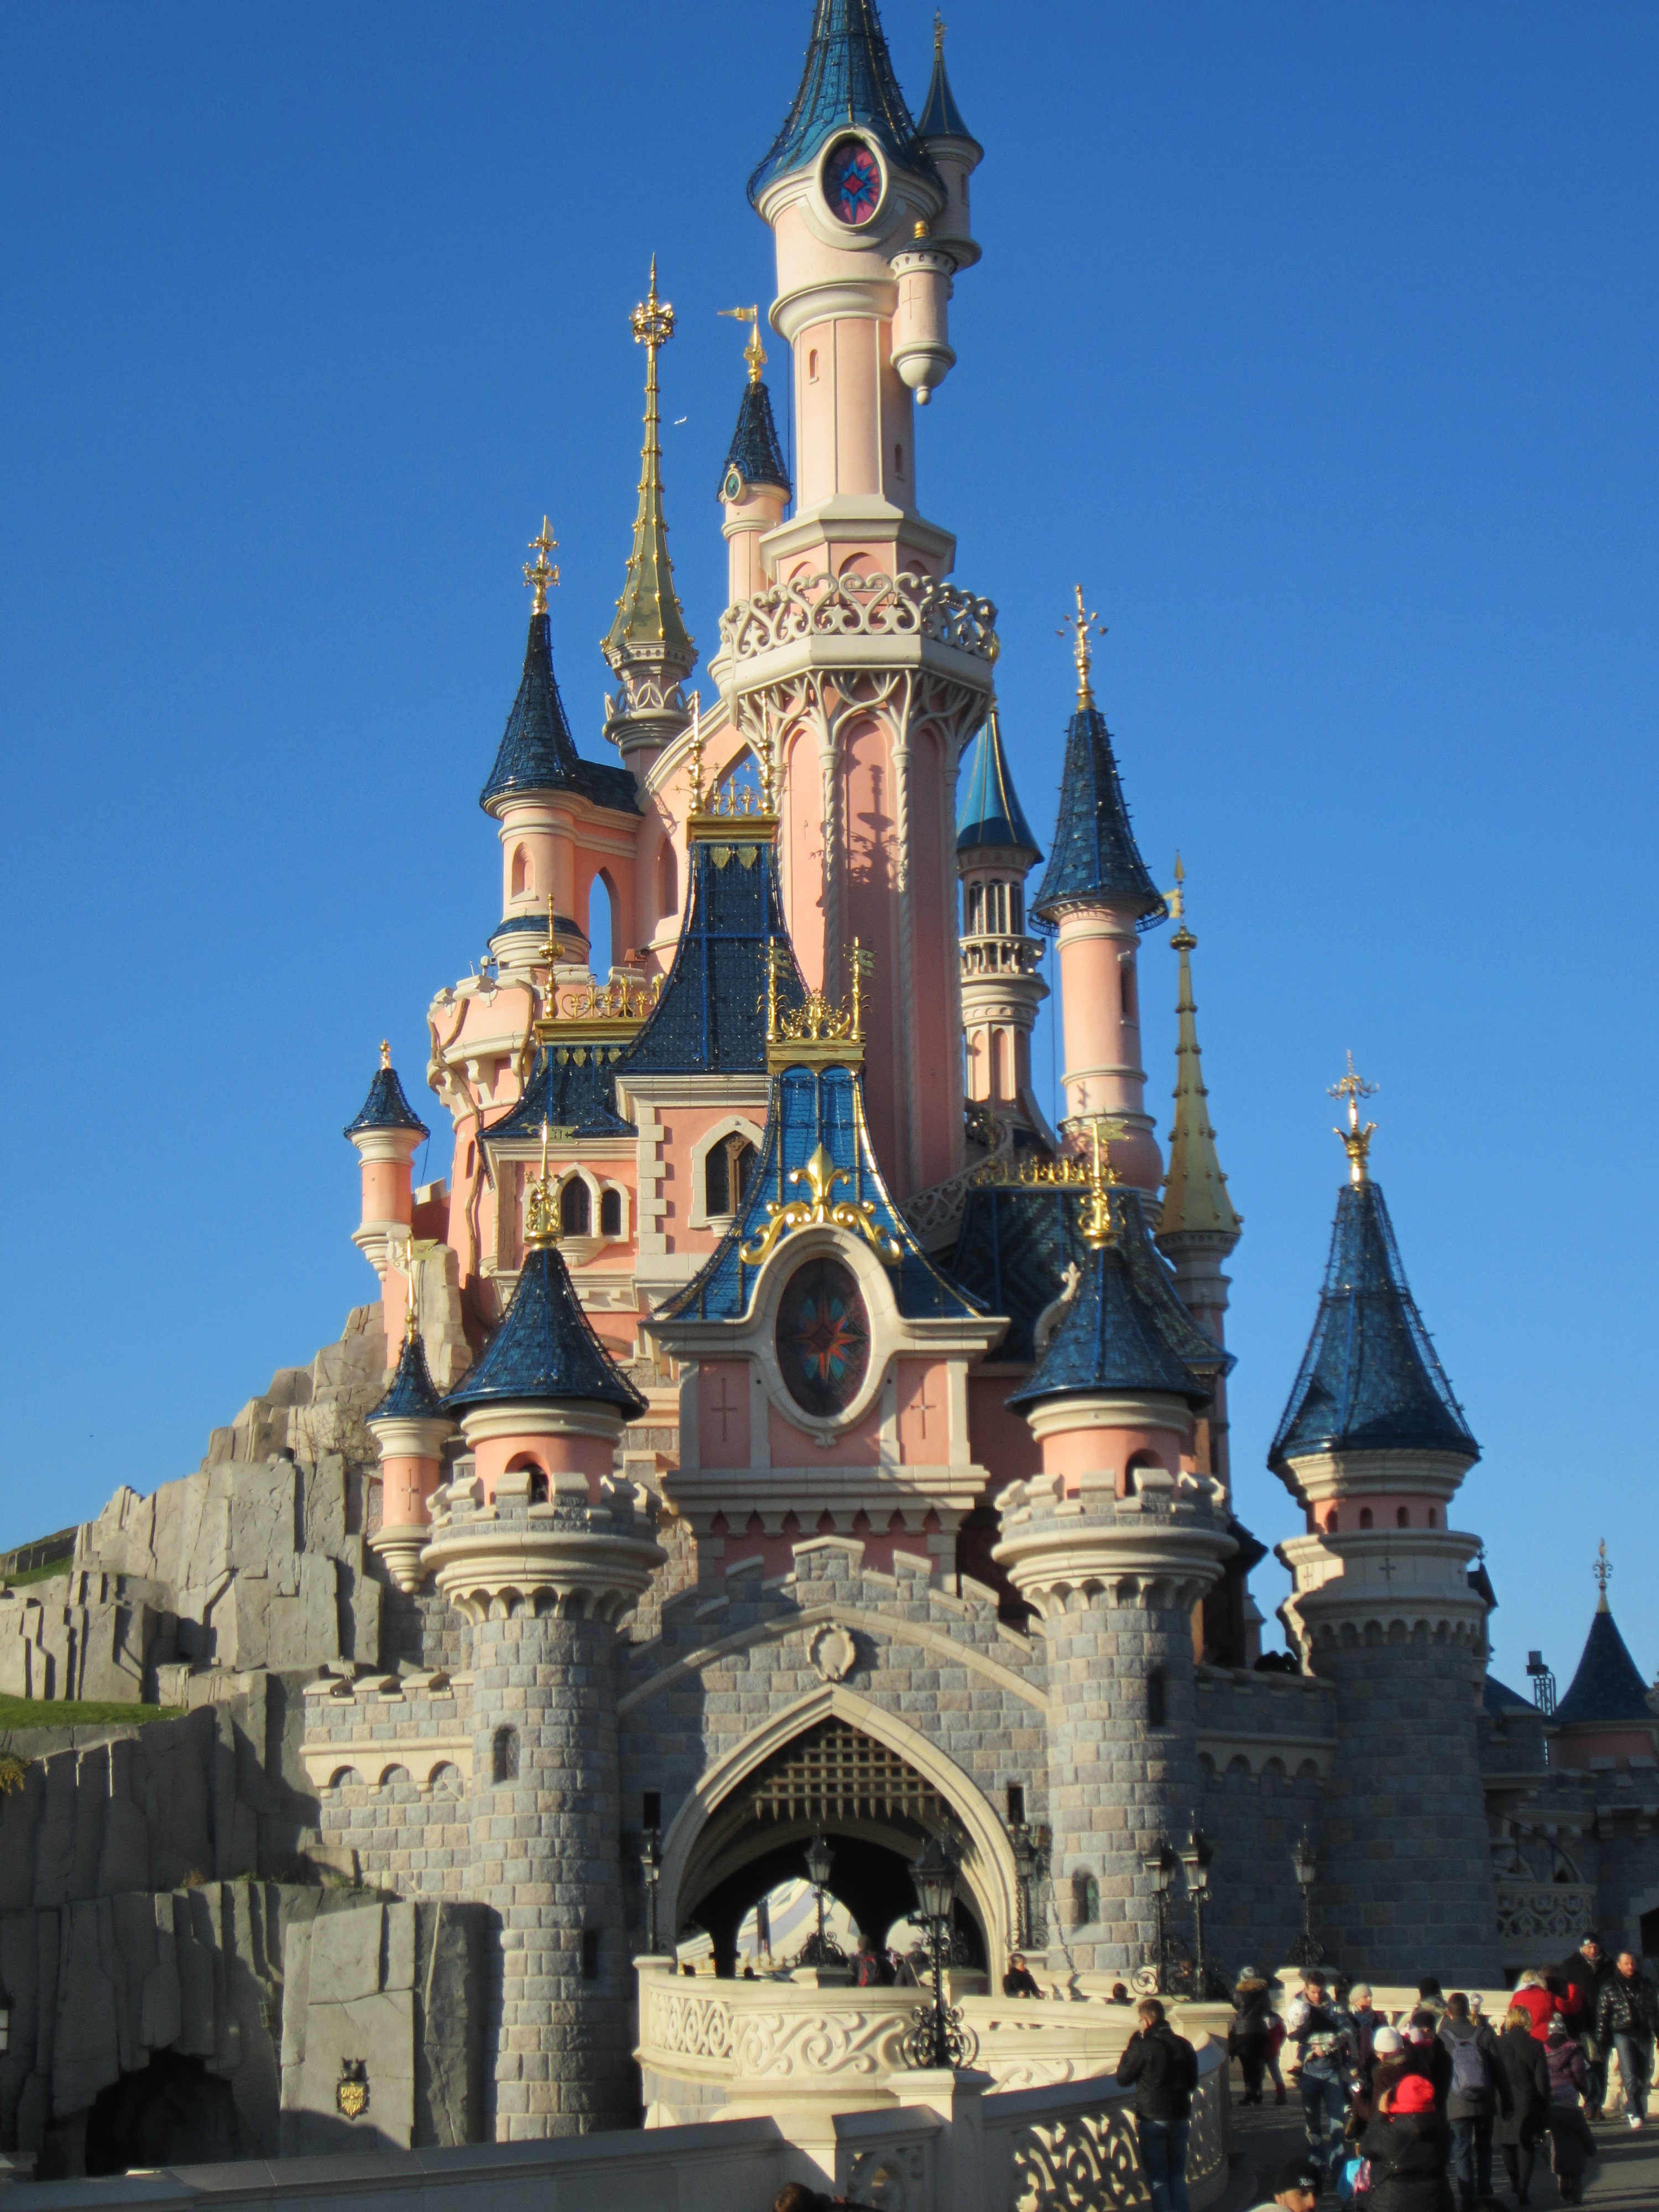 Фотки диснея. Уолт Дисней замок. Замок Диснейленд в Париже. Диснейленд замок Диснея. Замок Золушки в Диснейленде в Париже.